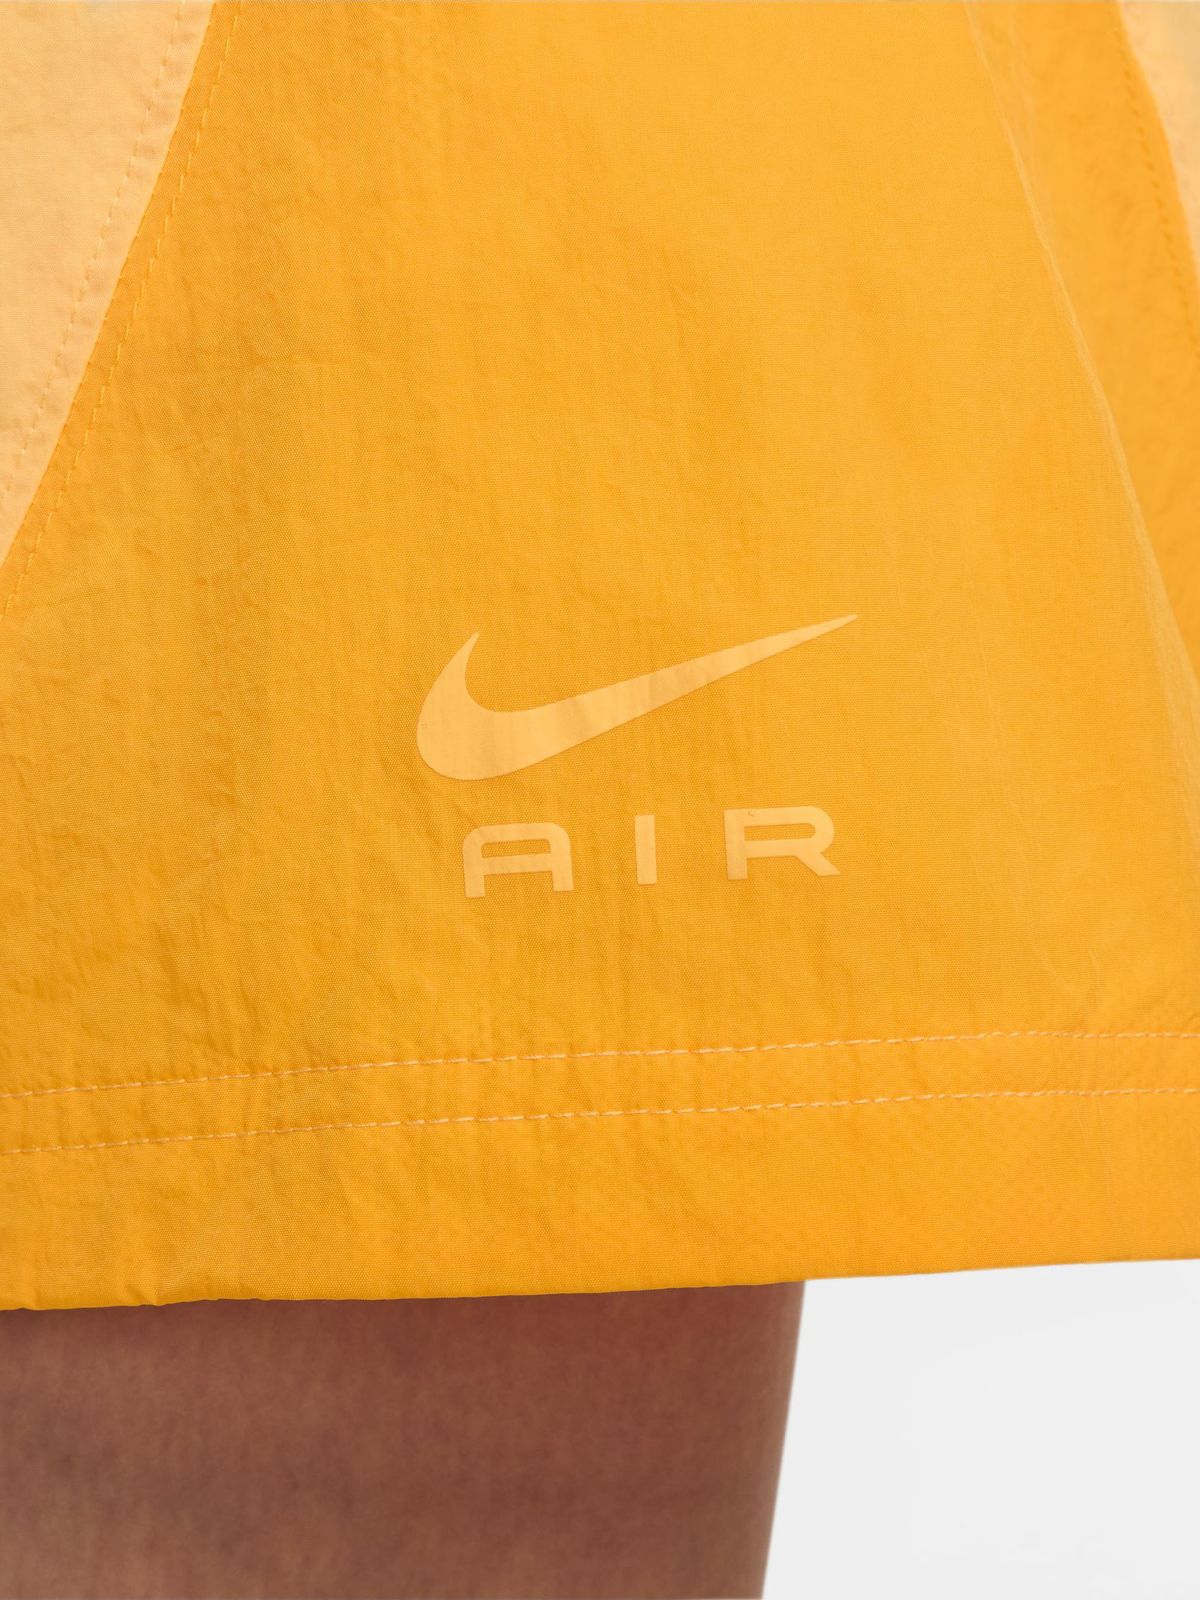  חצאית מיני קולור בלוק Nike Air של NIKE